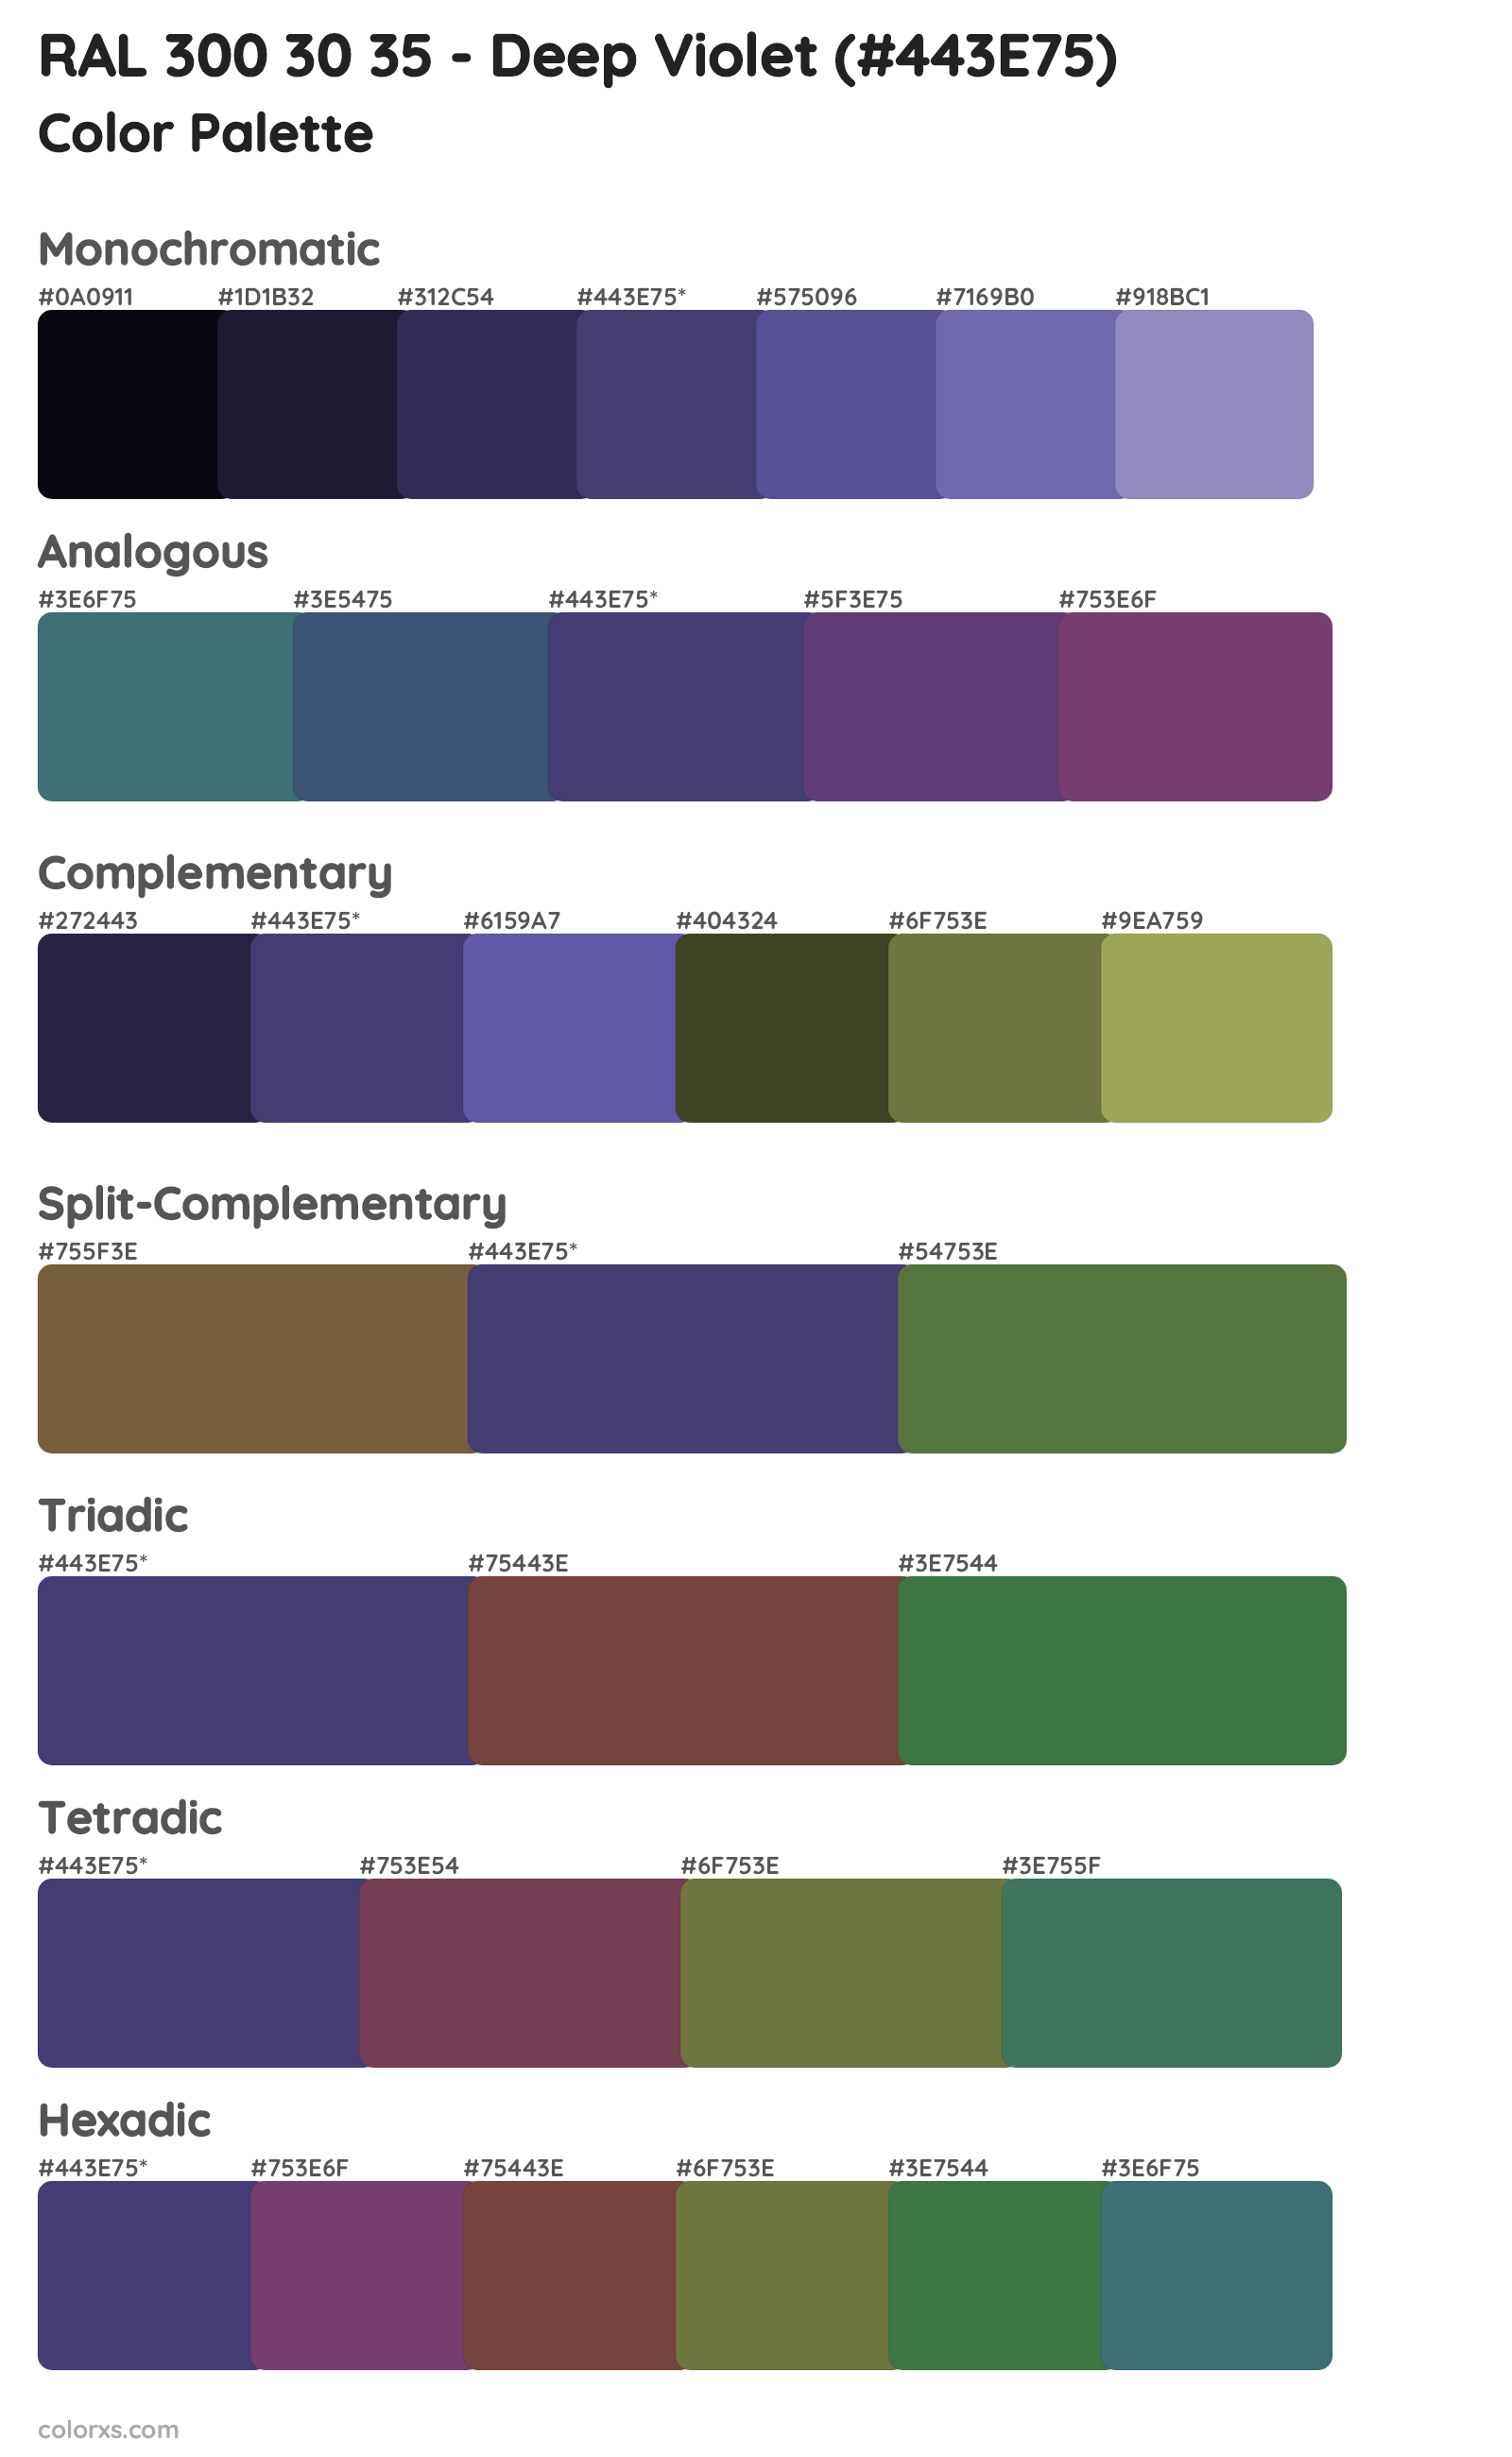 RAL 300 30 35 - Deep Violet Color Scheme Palettes